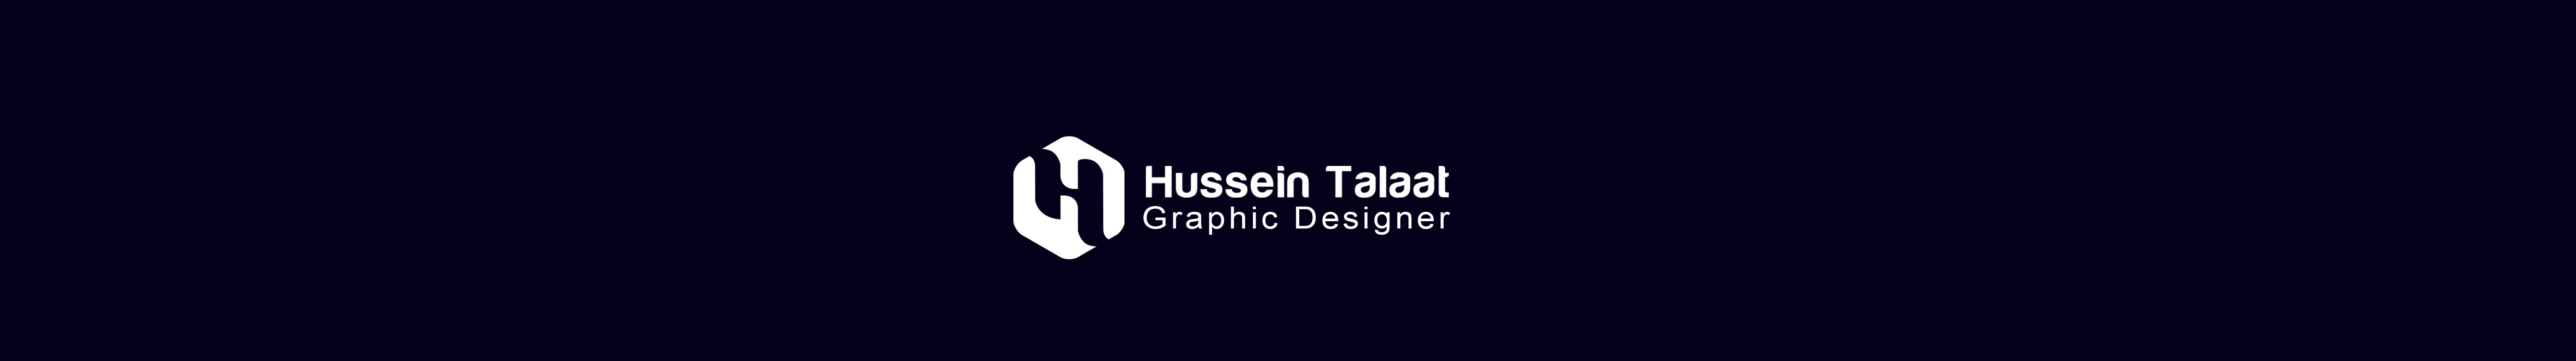 Hussein Talaat のプロファイルバナー